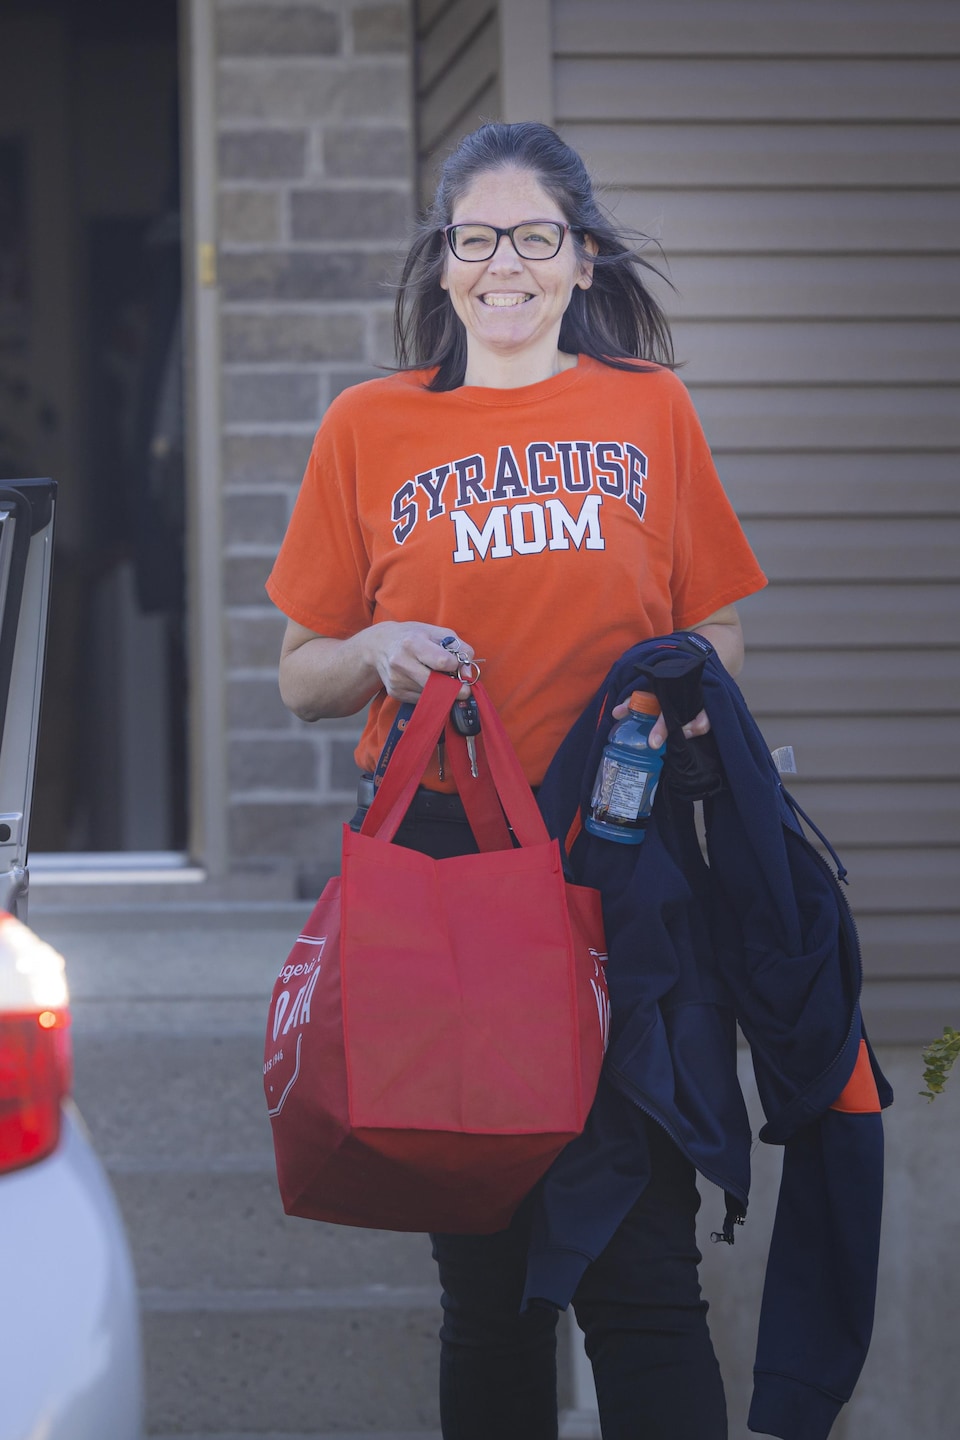 Une femme avec un chandail orange va déposer un sac dans le coffre de sa voiture